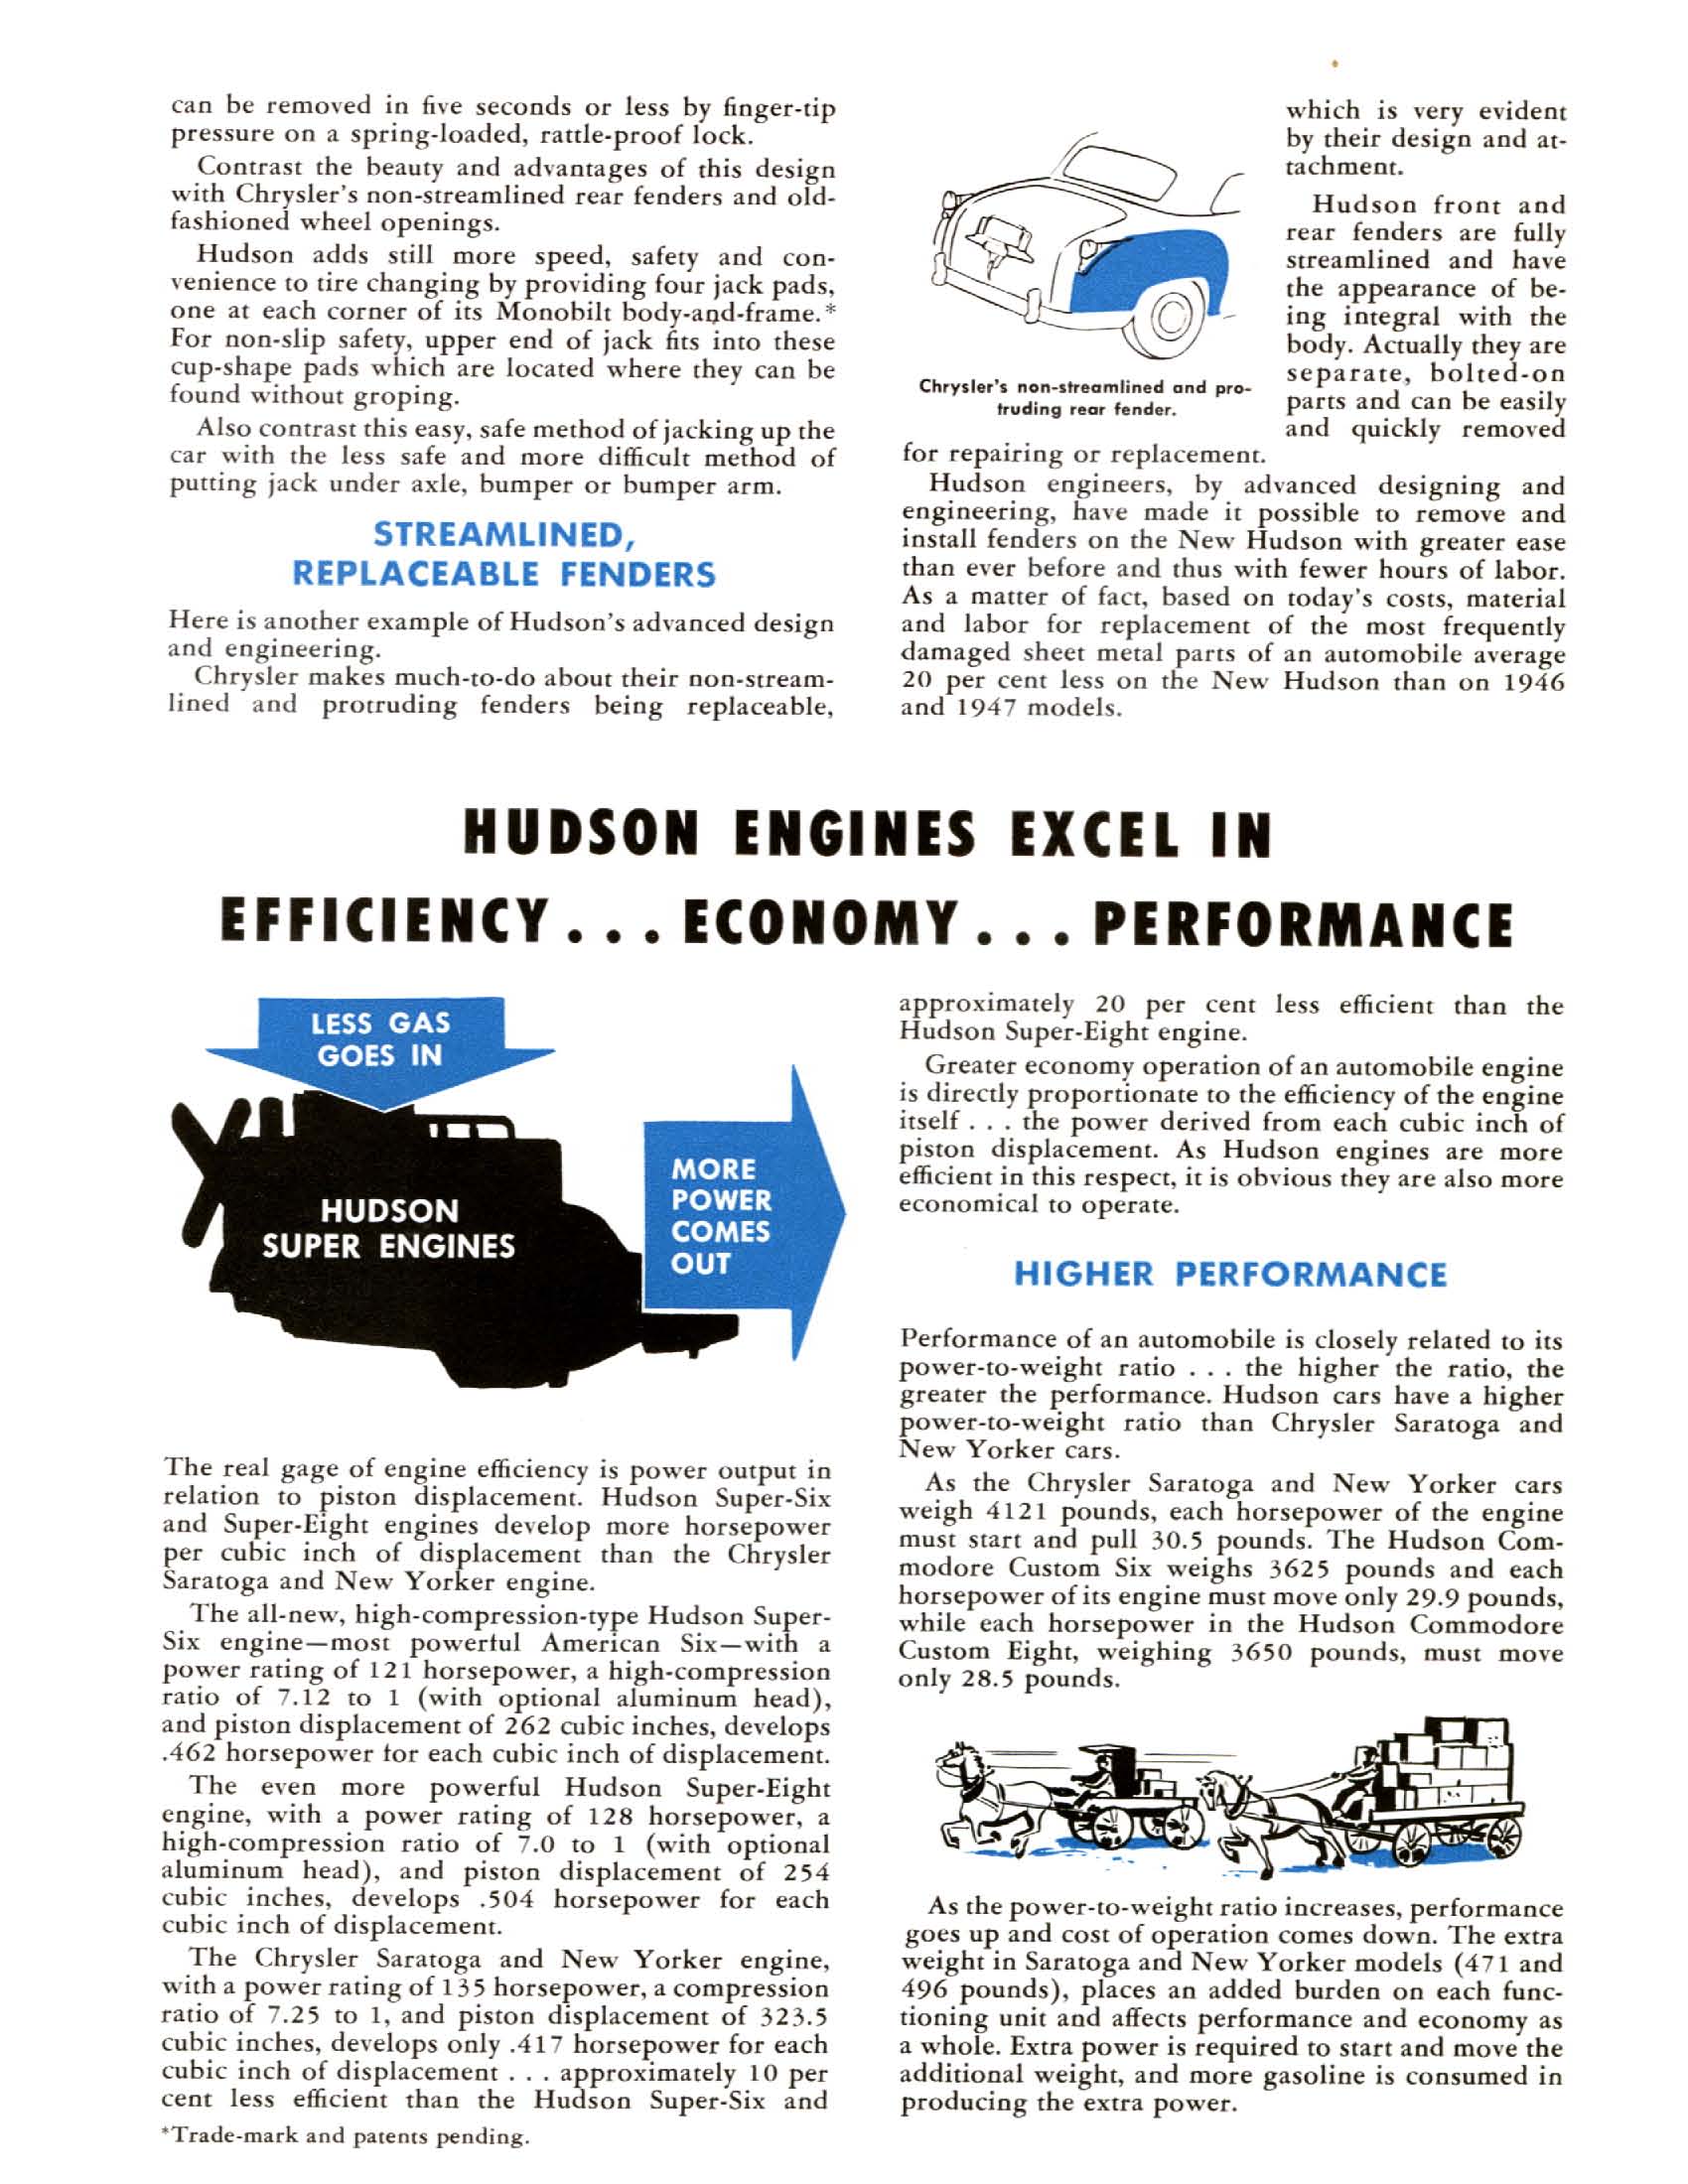 1949 Hudson vs Chrysler Royal-04